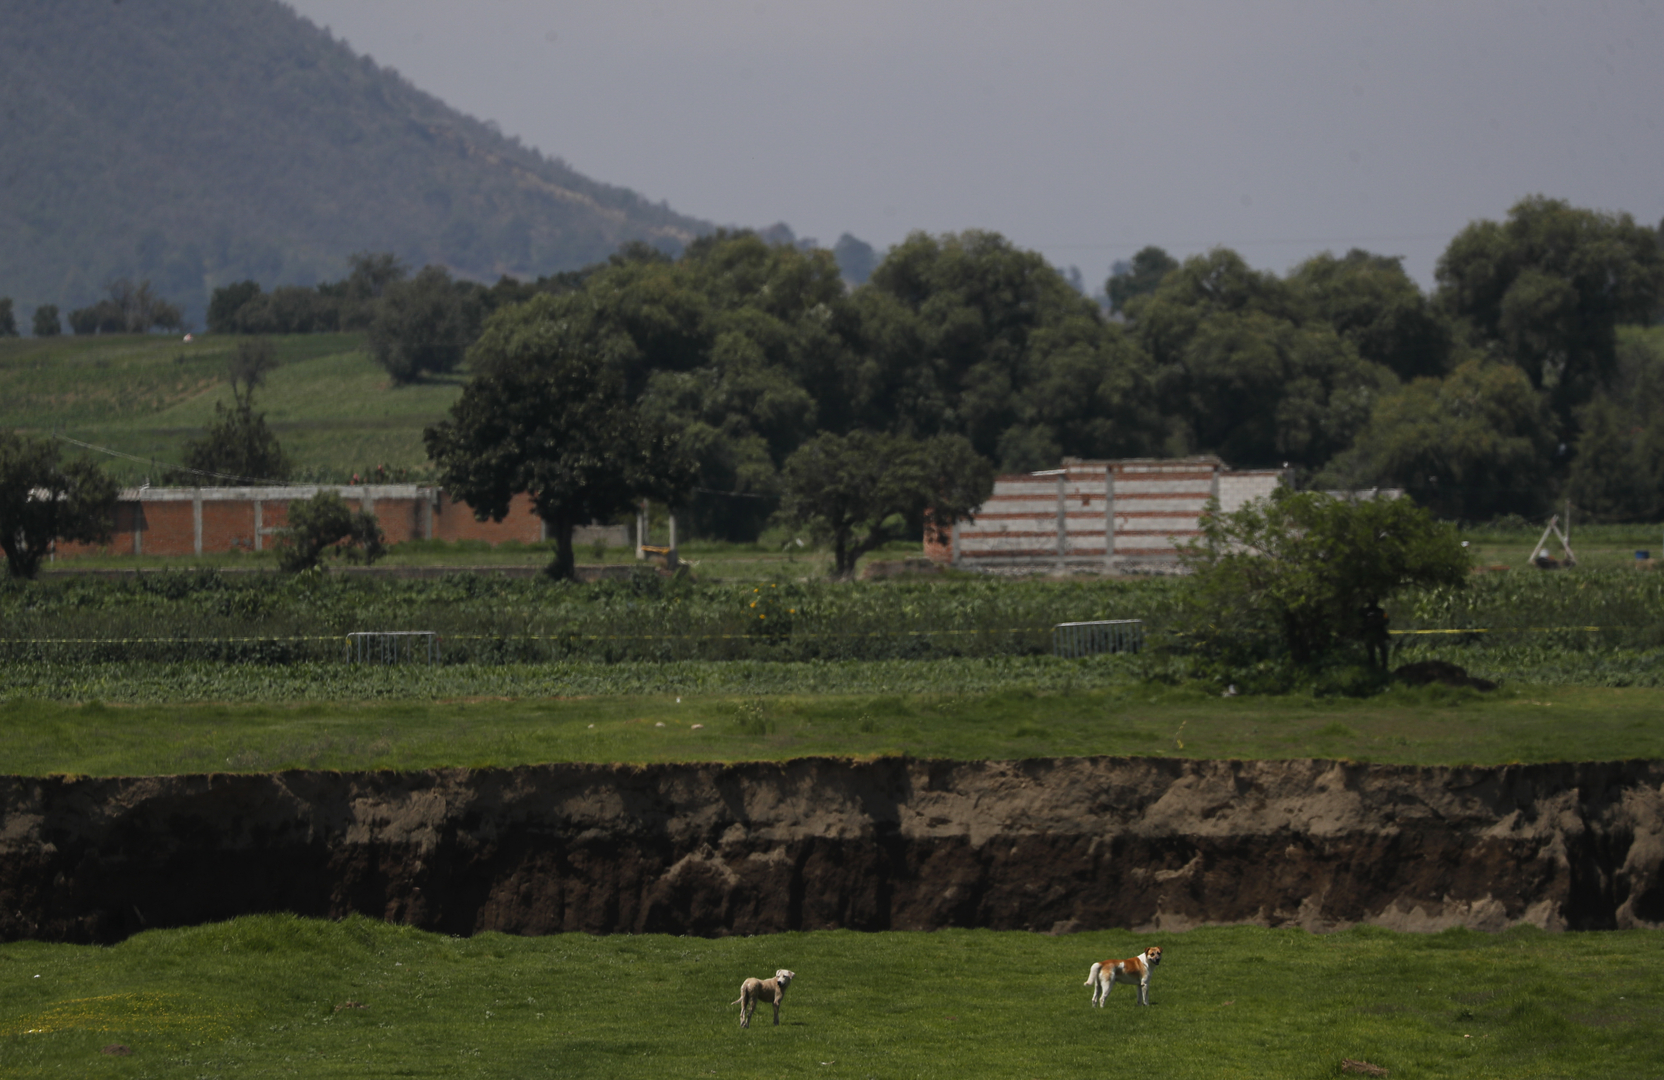 حفرة عملاقة في مزرعة بالمكسيك تتوسع وتبتلع المزيد من الأراضي (فيديو + صور)